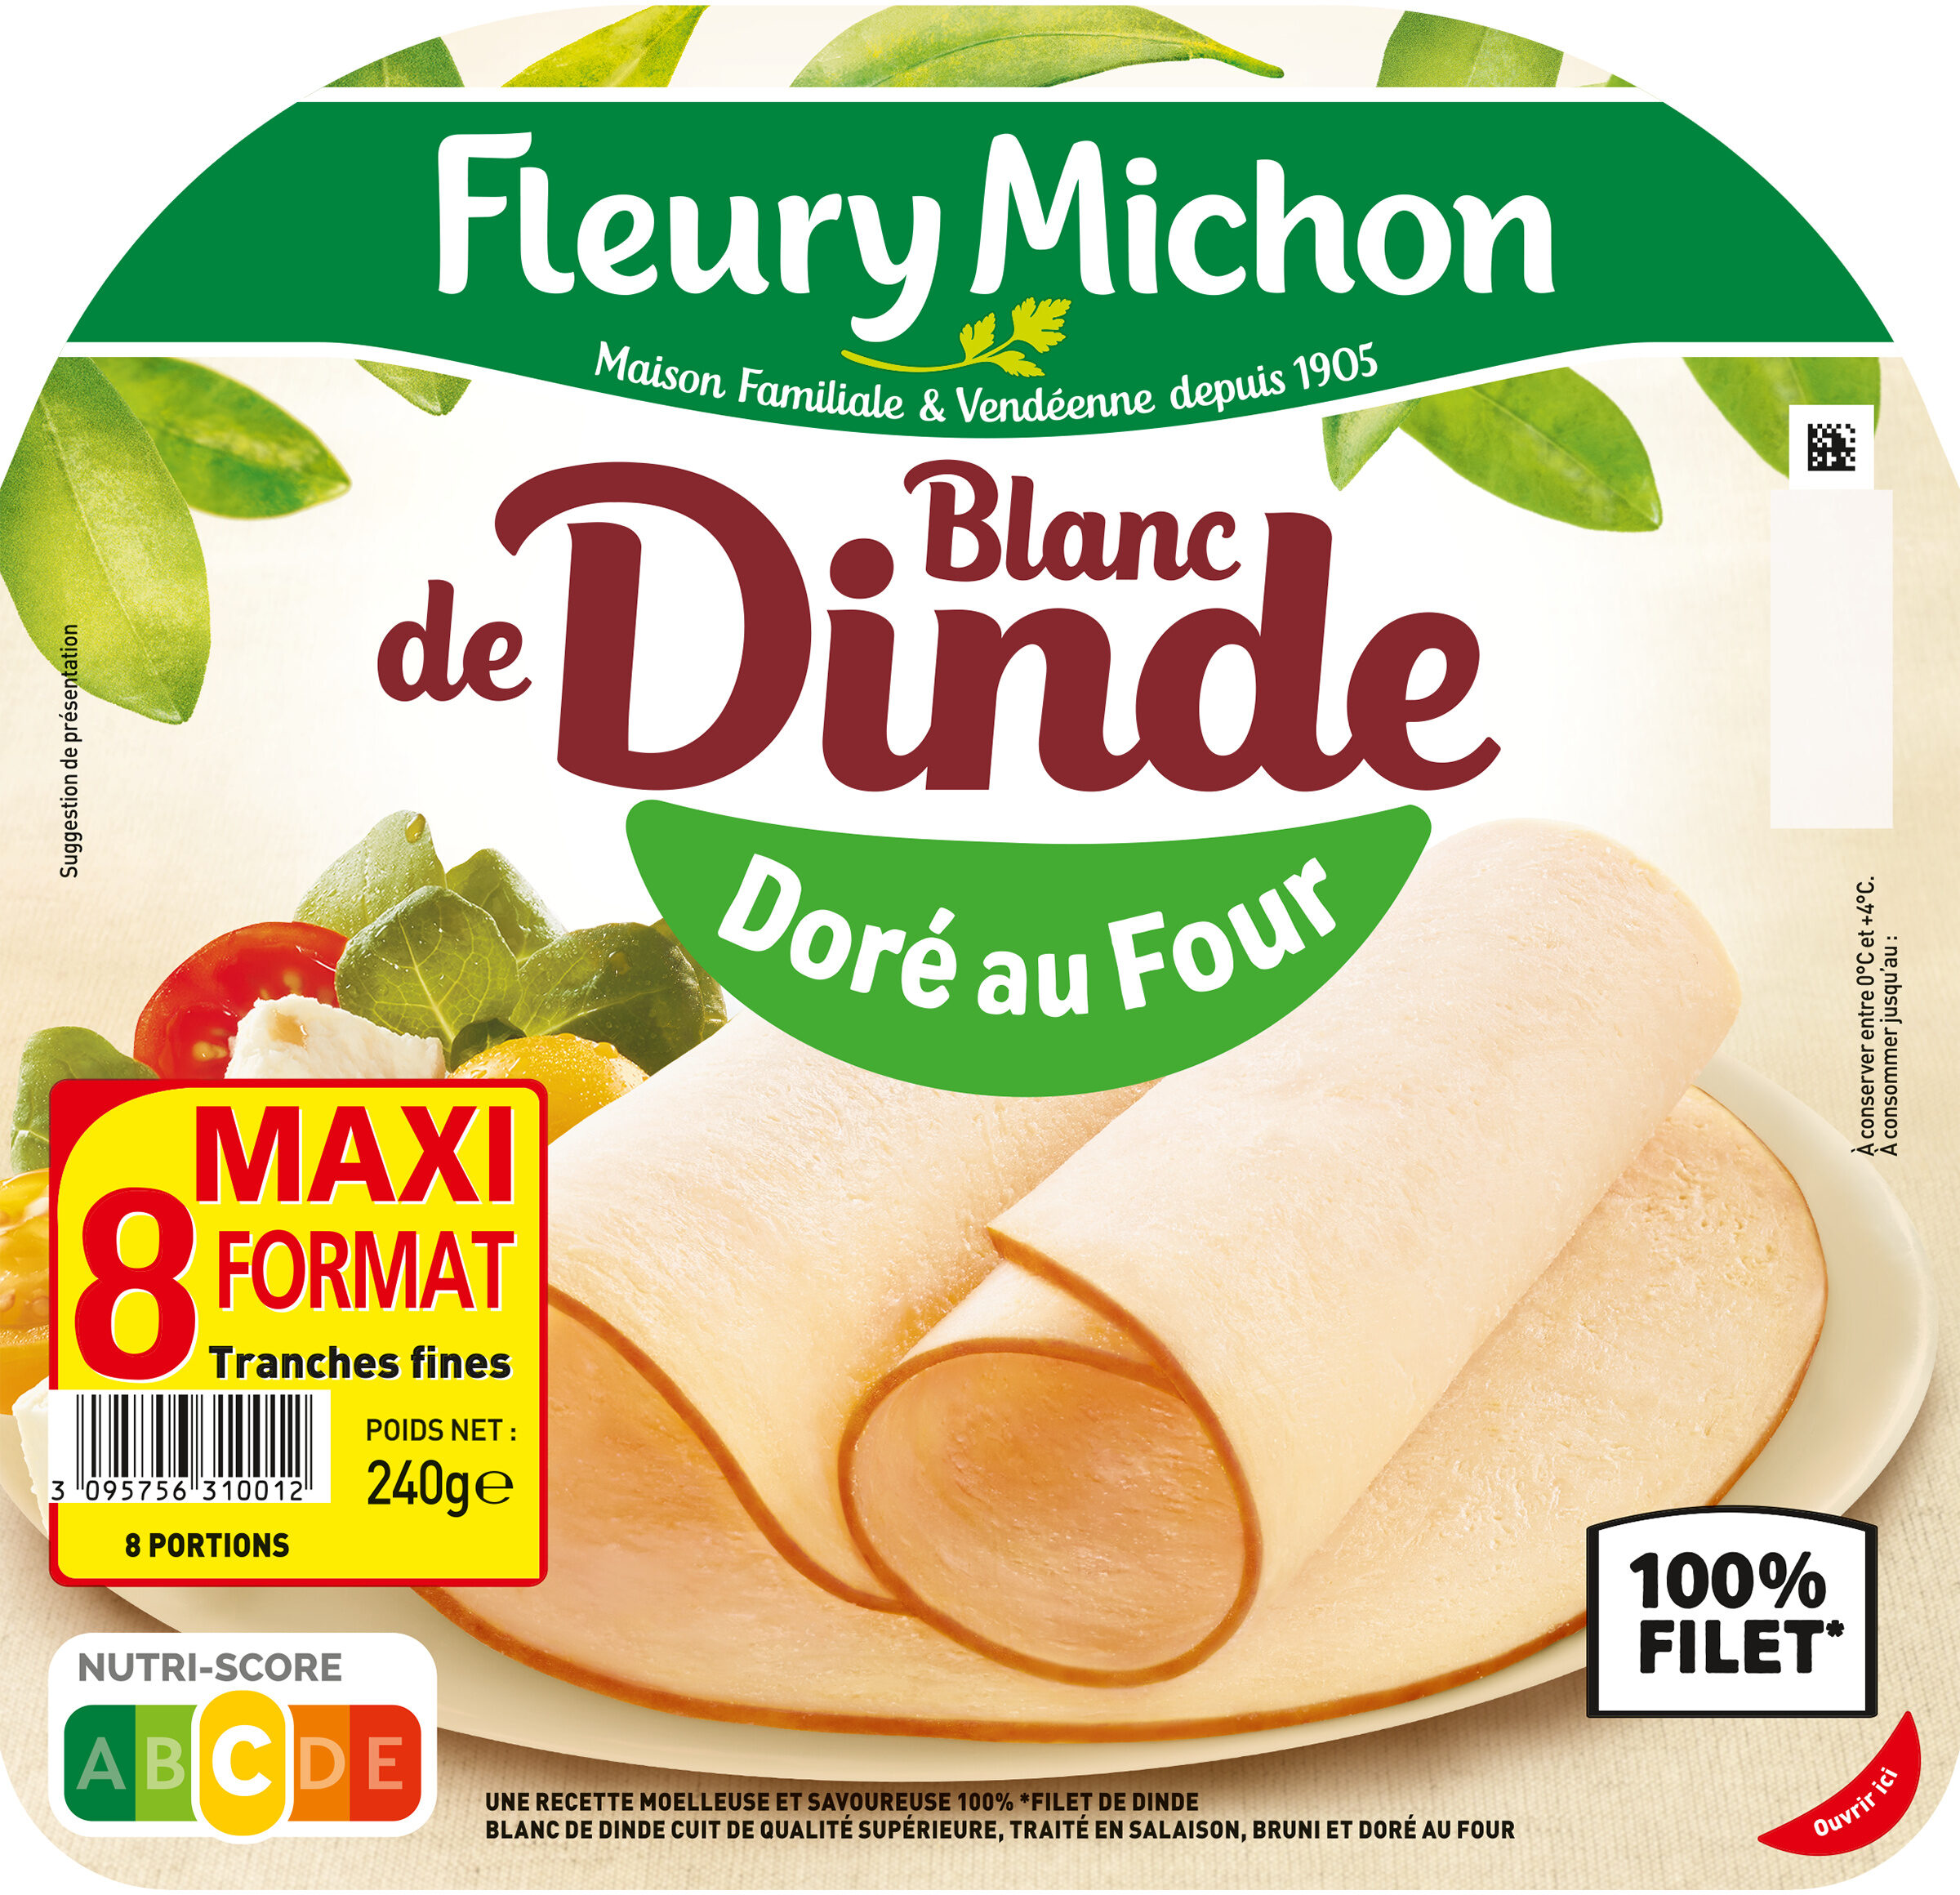 Blanc de Dinde - Doré au Four - Product - fr